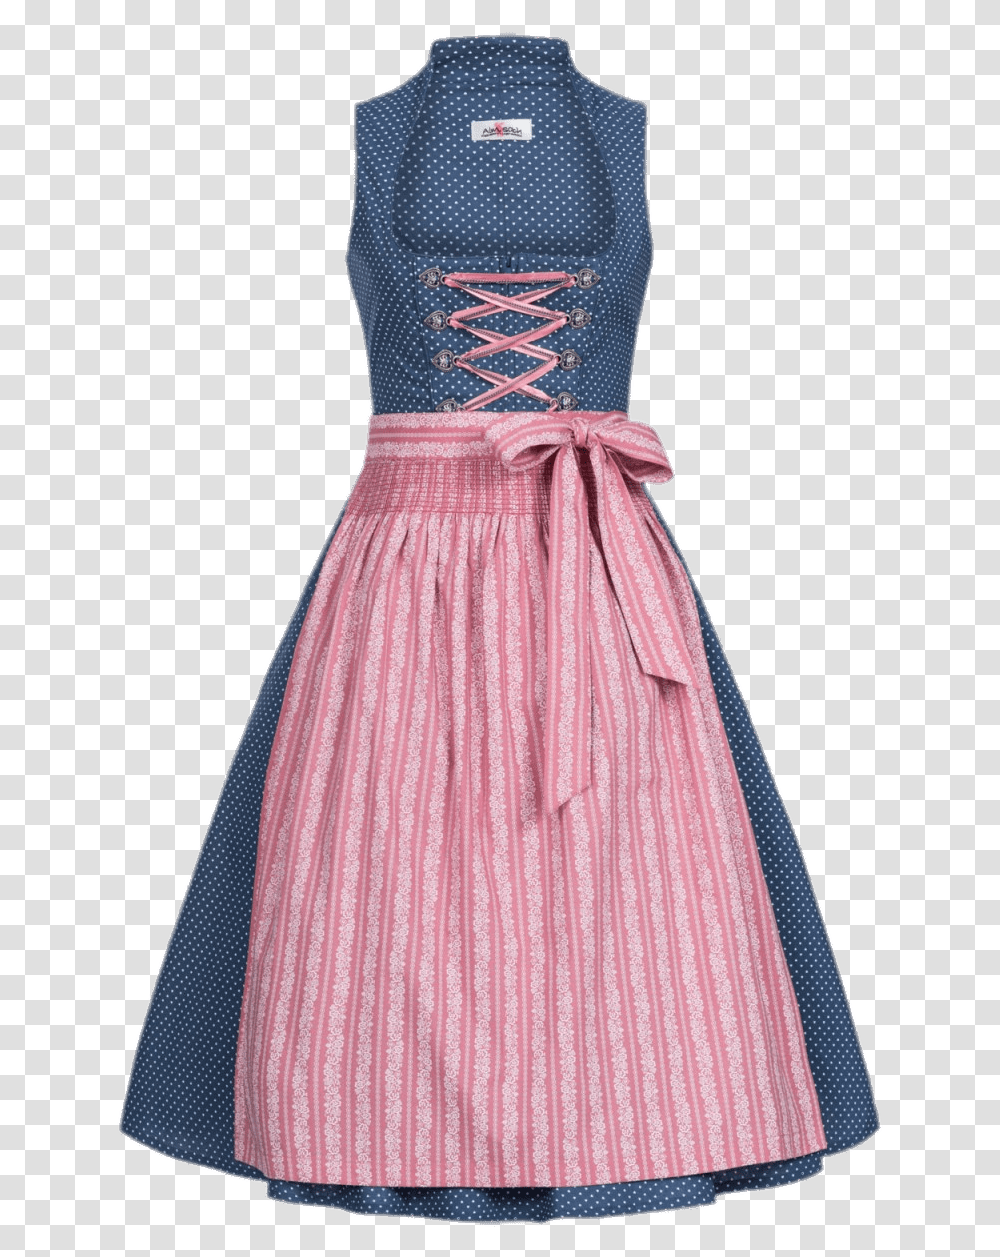 Blue And Pink Dirndl Dress Dirndln, Apparel, Evening Dress, Robe Transparent Png